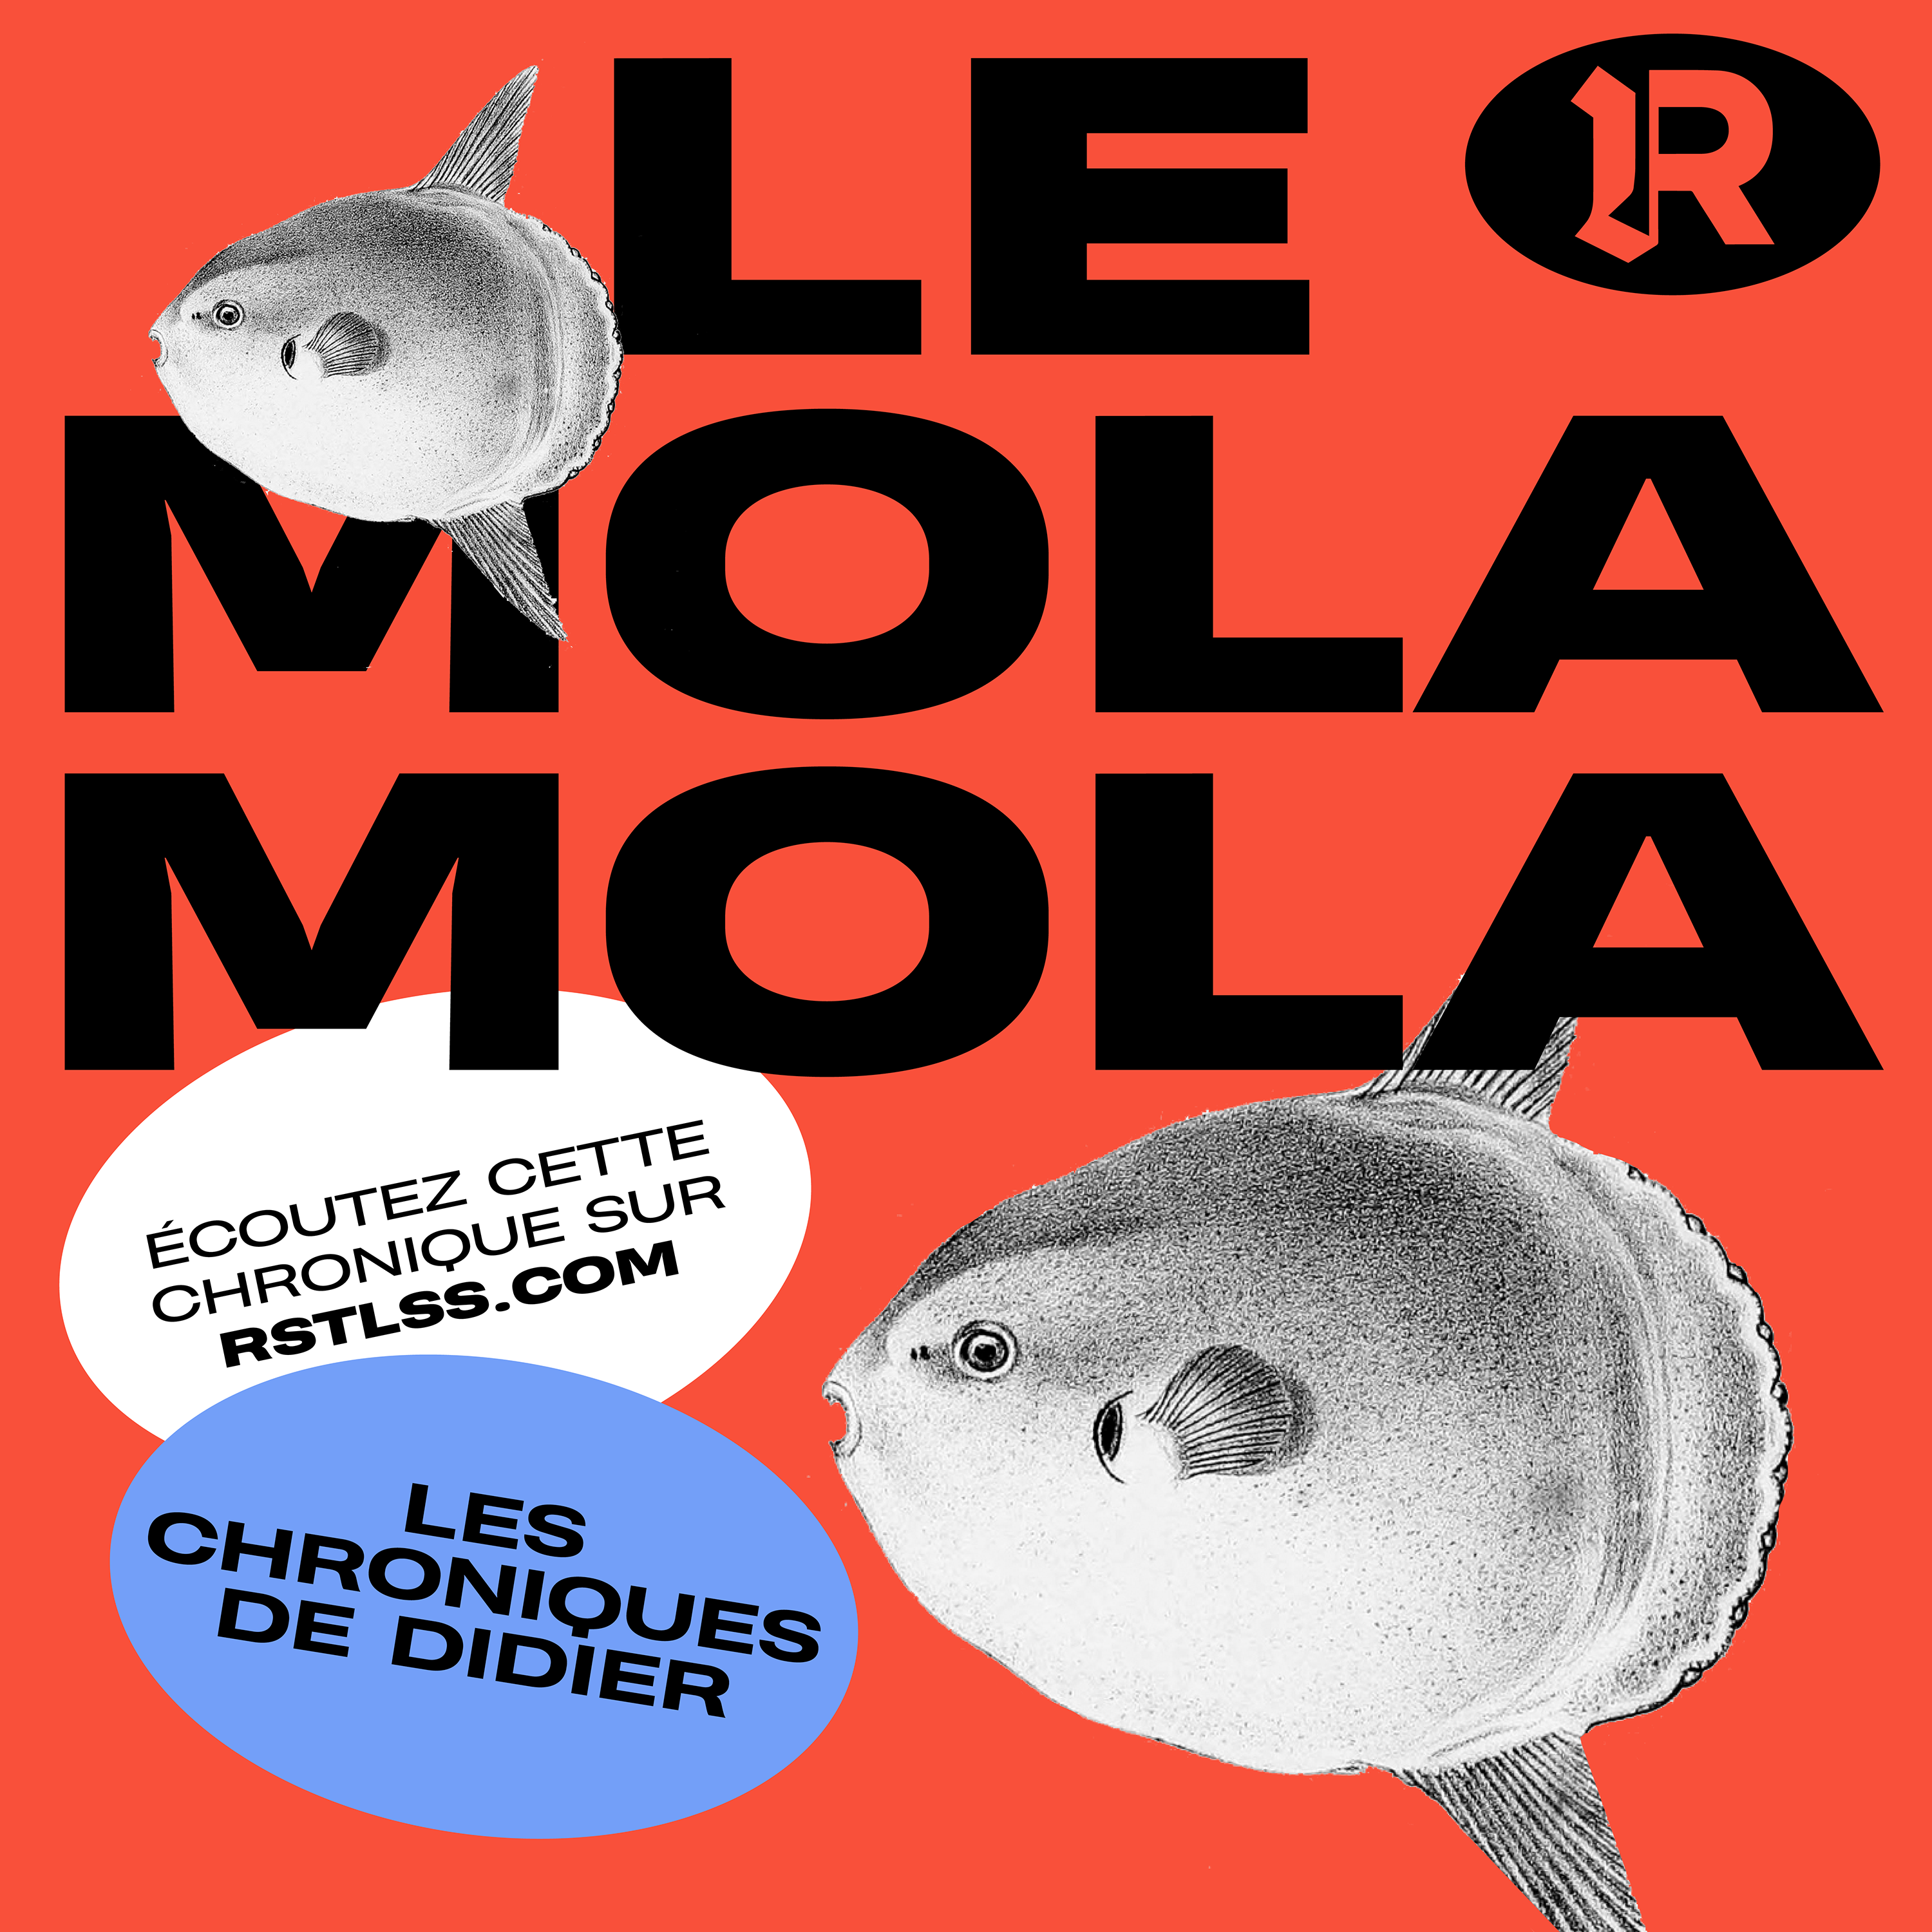 Le Mola Mola RSTLSS